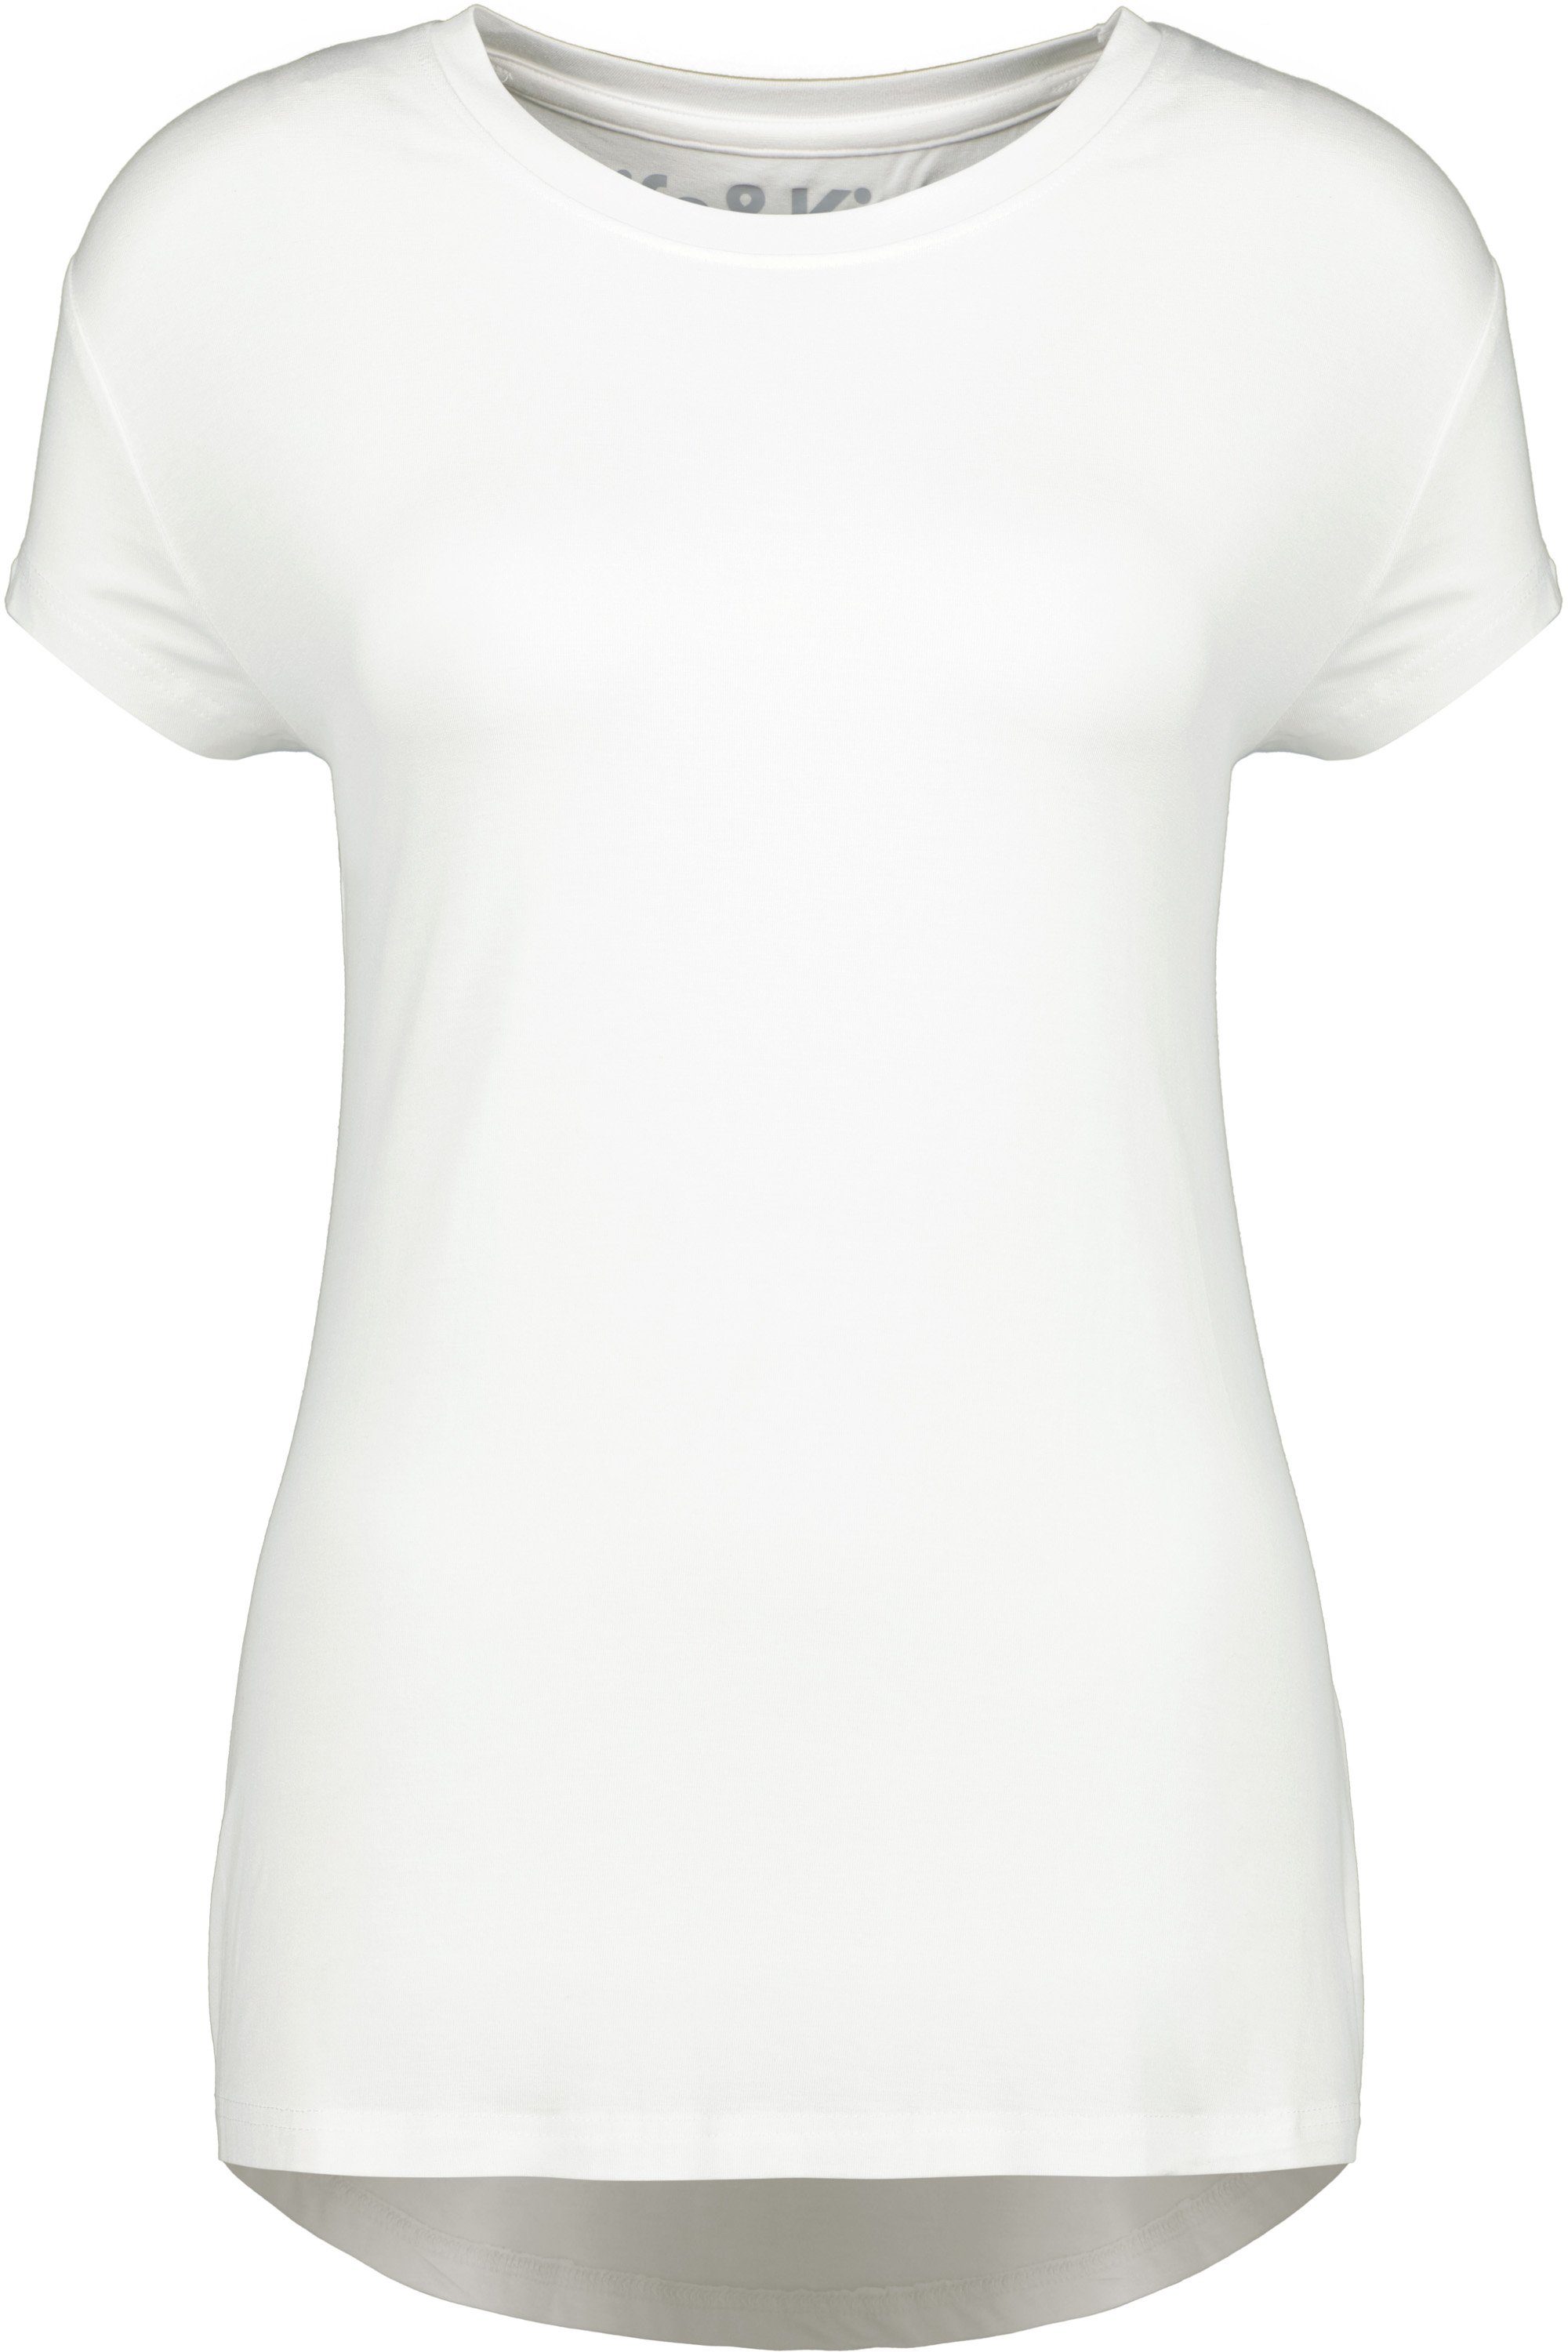 Alife & Kurzarmshirt, Shirt Kickin Shirt Rundhalsshirt A white MimmyAK Damen